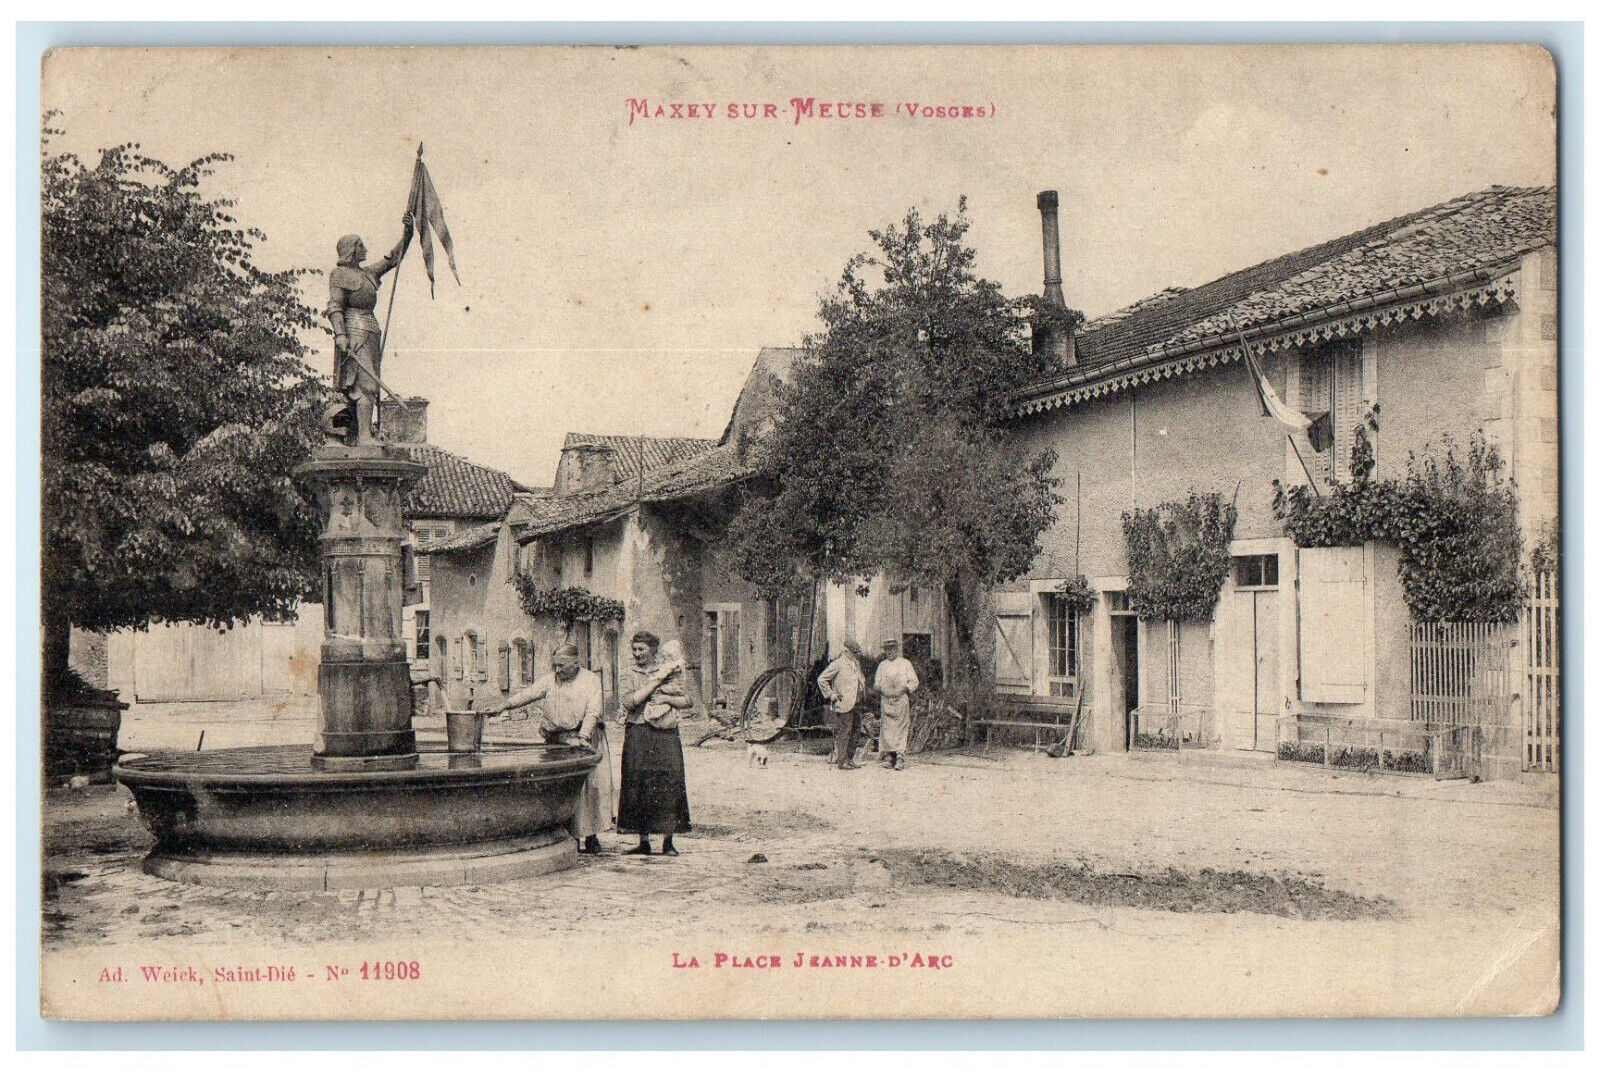 1921 La Place Jeanne D'Arc Maxey Sur Meuse (Vosges) France Postcard